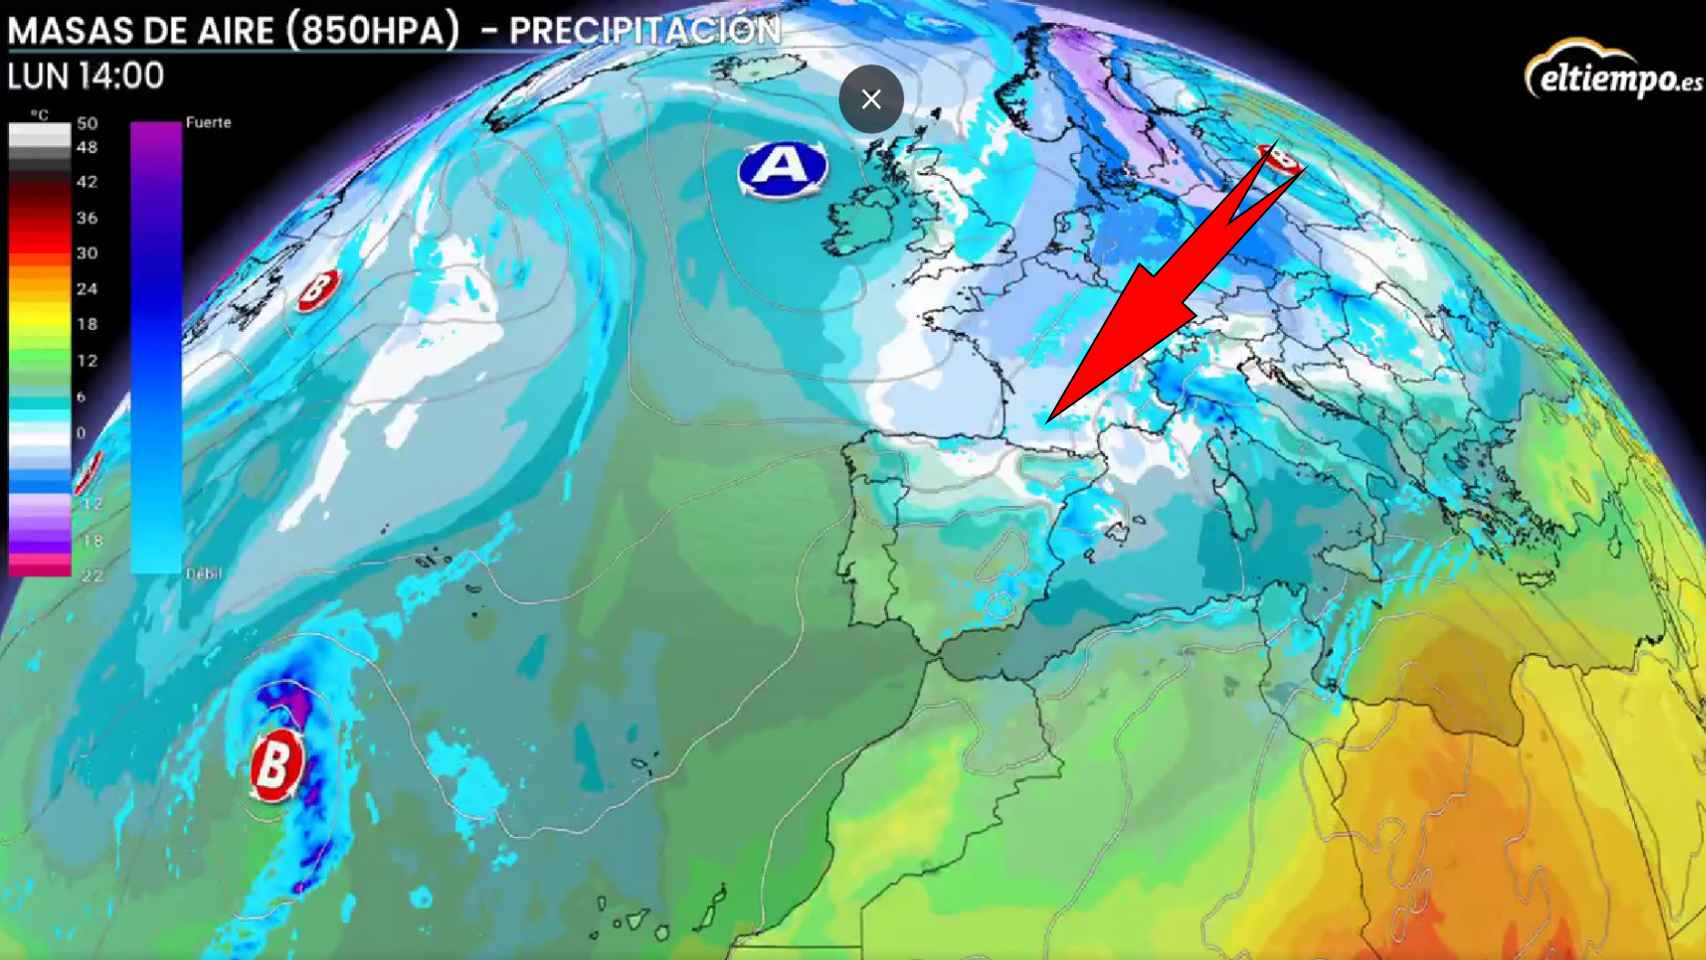 El frío polar llega a España tras la DANA: Aemet avisa de temperaturas bajo cero inminentes en estas zonas